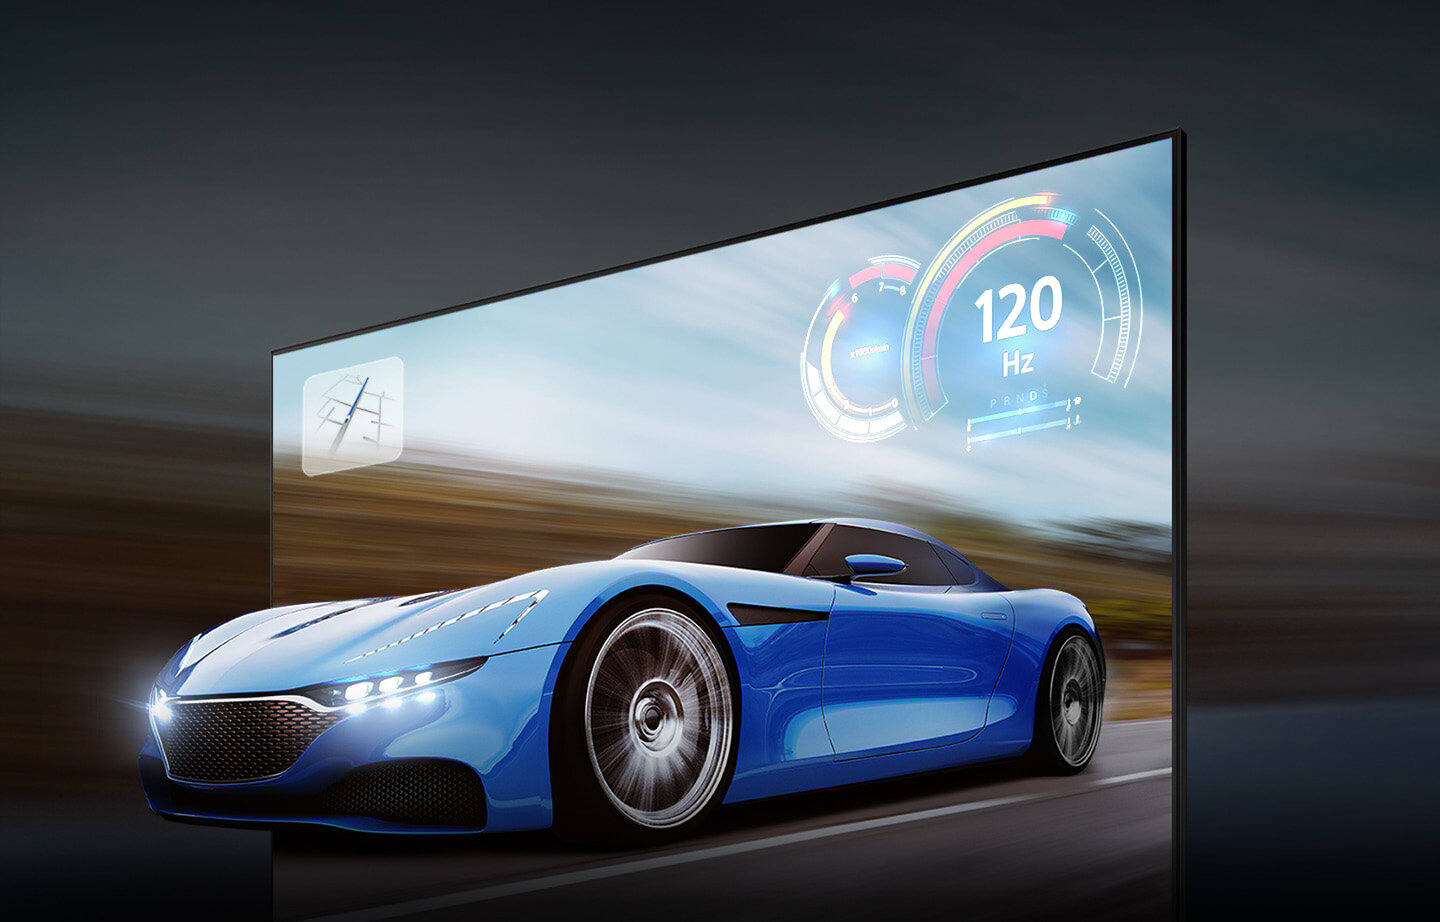 Ścigający się samochód wygląda o wiele wyraźniej na ekranie QLED niż na zwykłym ekranie dzięki Zaawansowanemu Upłynniaczowi Ruchu+ do 120 Hz w 4K. Q77BATXXH